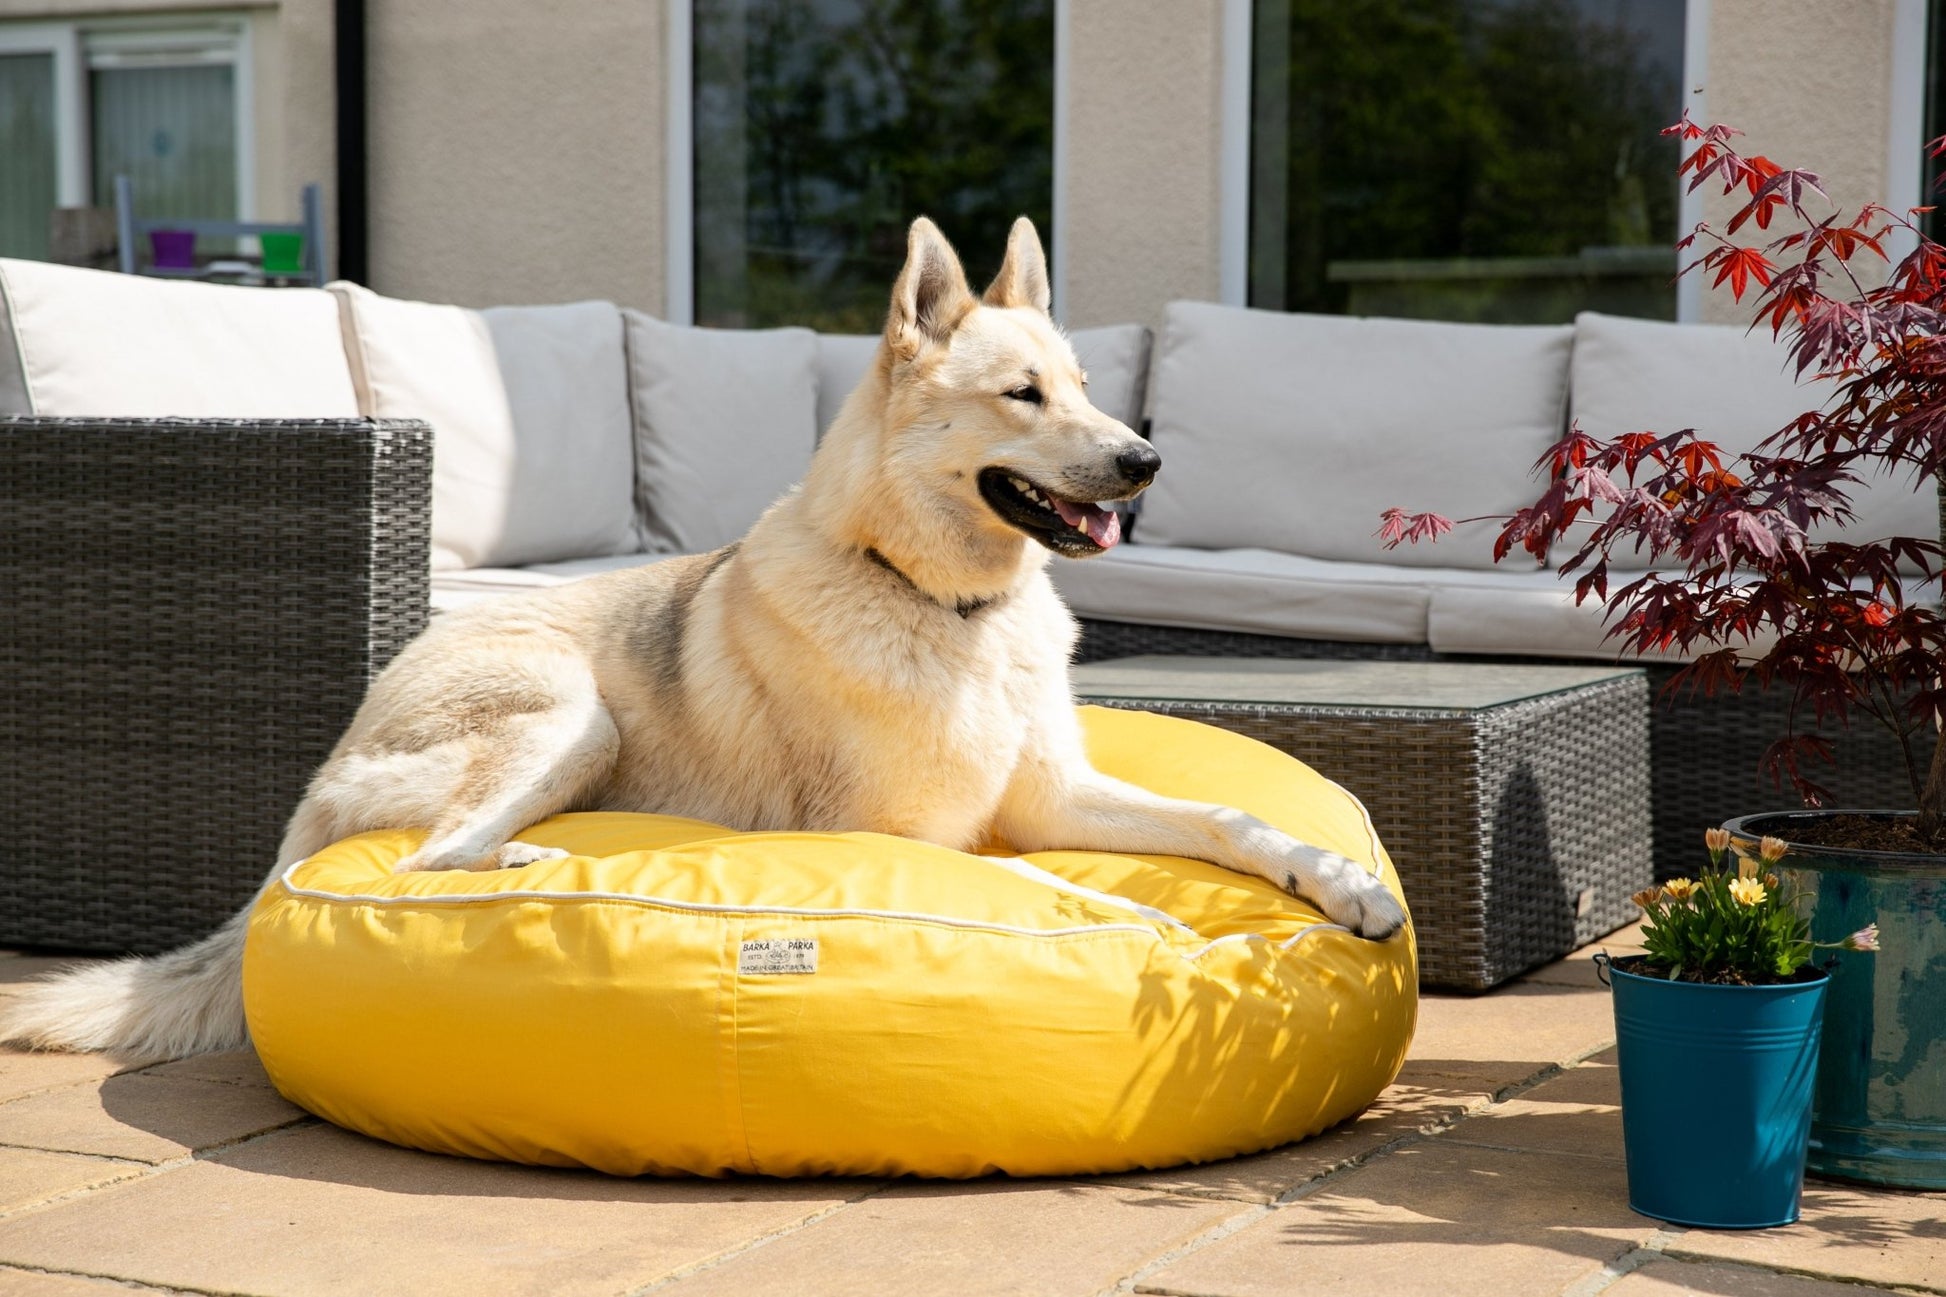 Barka Parka Dog Bed - Yellow and cream piping - Barka Parka Dog Beds